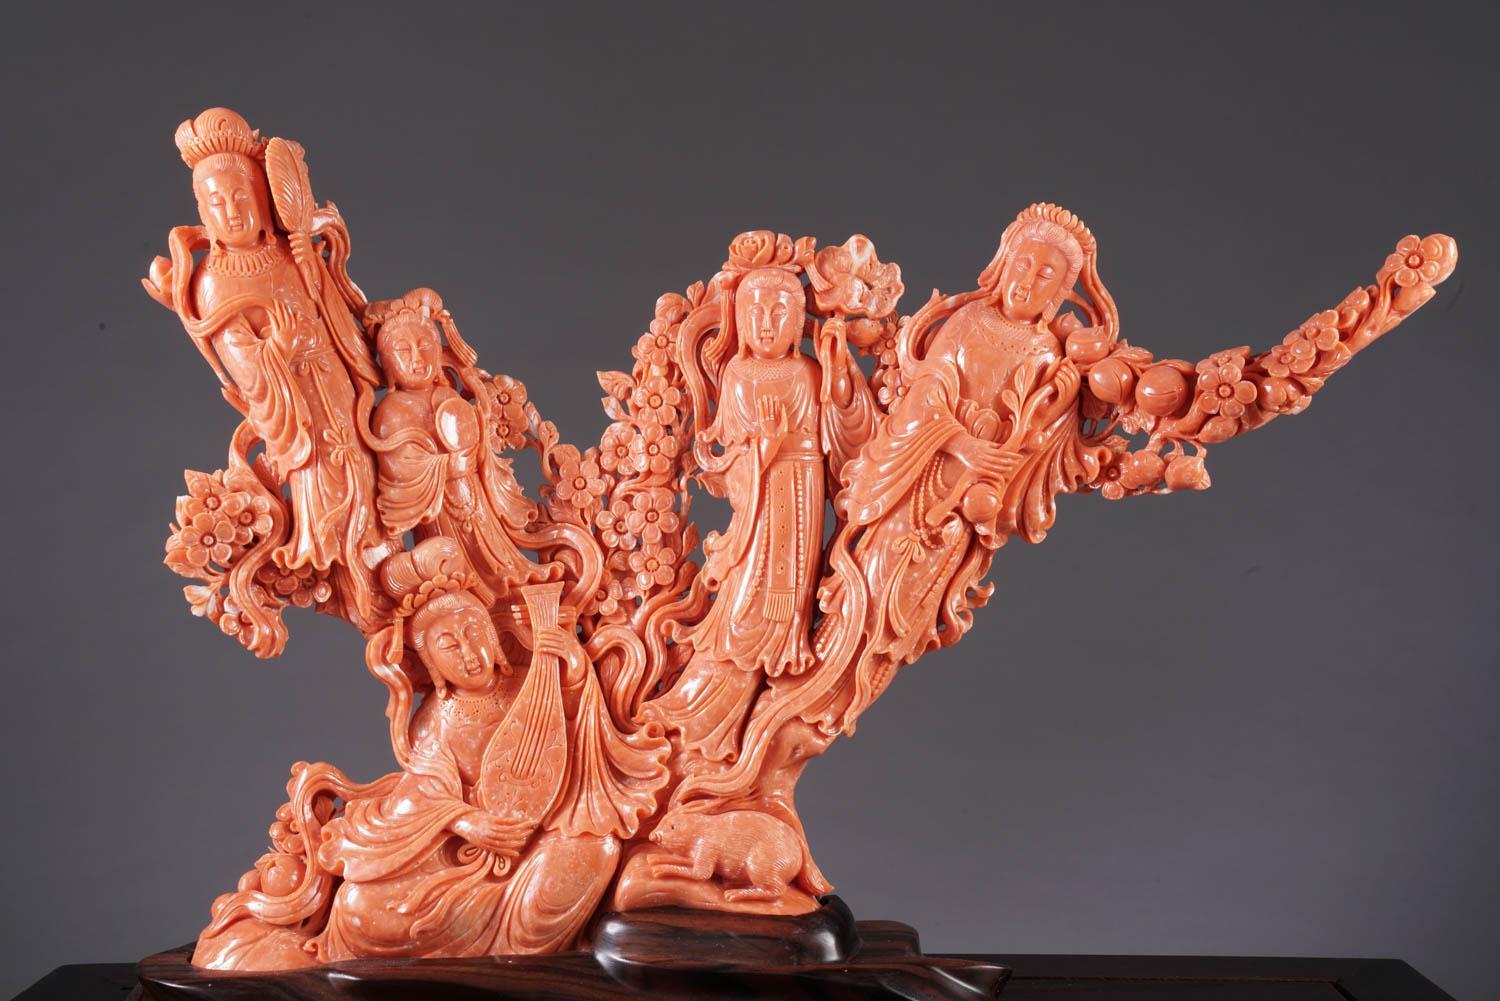 Eine außergewöhnliche und große chinesische geschnitzte Koralle figurale Gruppe / Statue der weiblichen Unsterblichen.

Sehr fein geschnitzt, sehr groß und schwer.

Koralle: 11,5